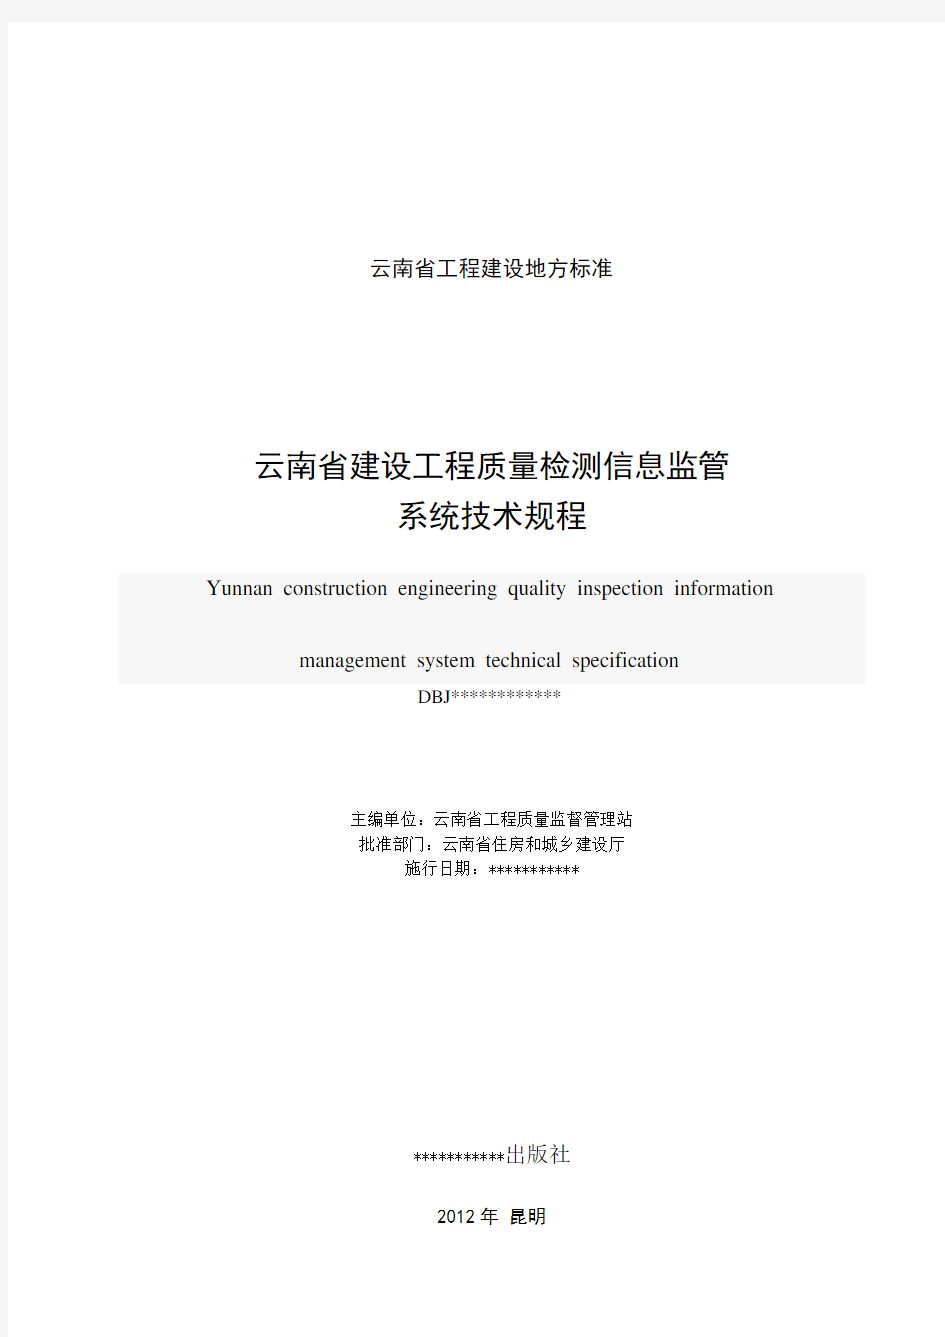 云南省建设工程质量检测信息监管